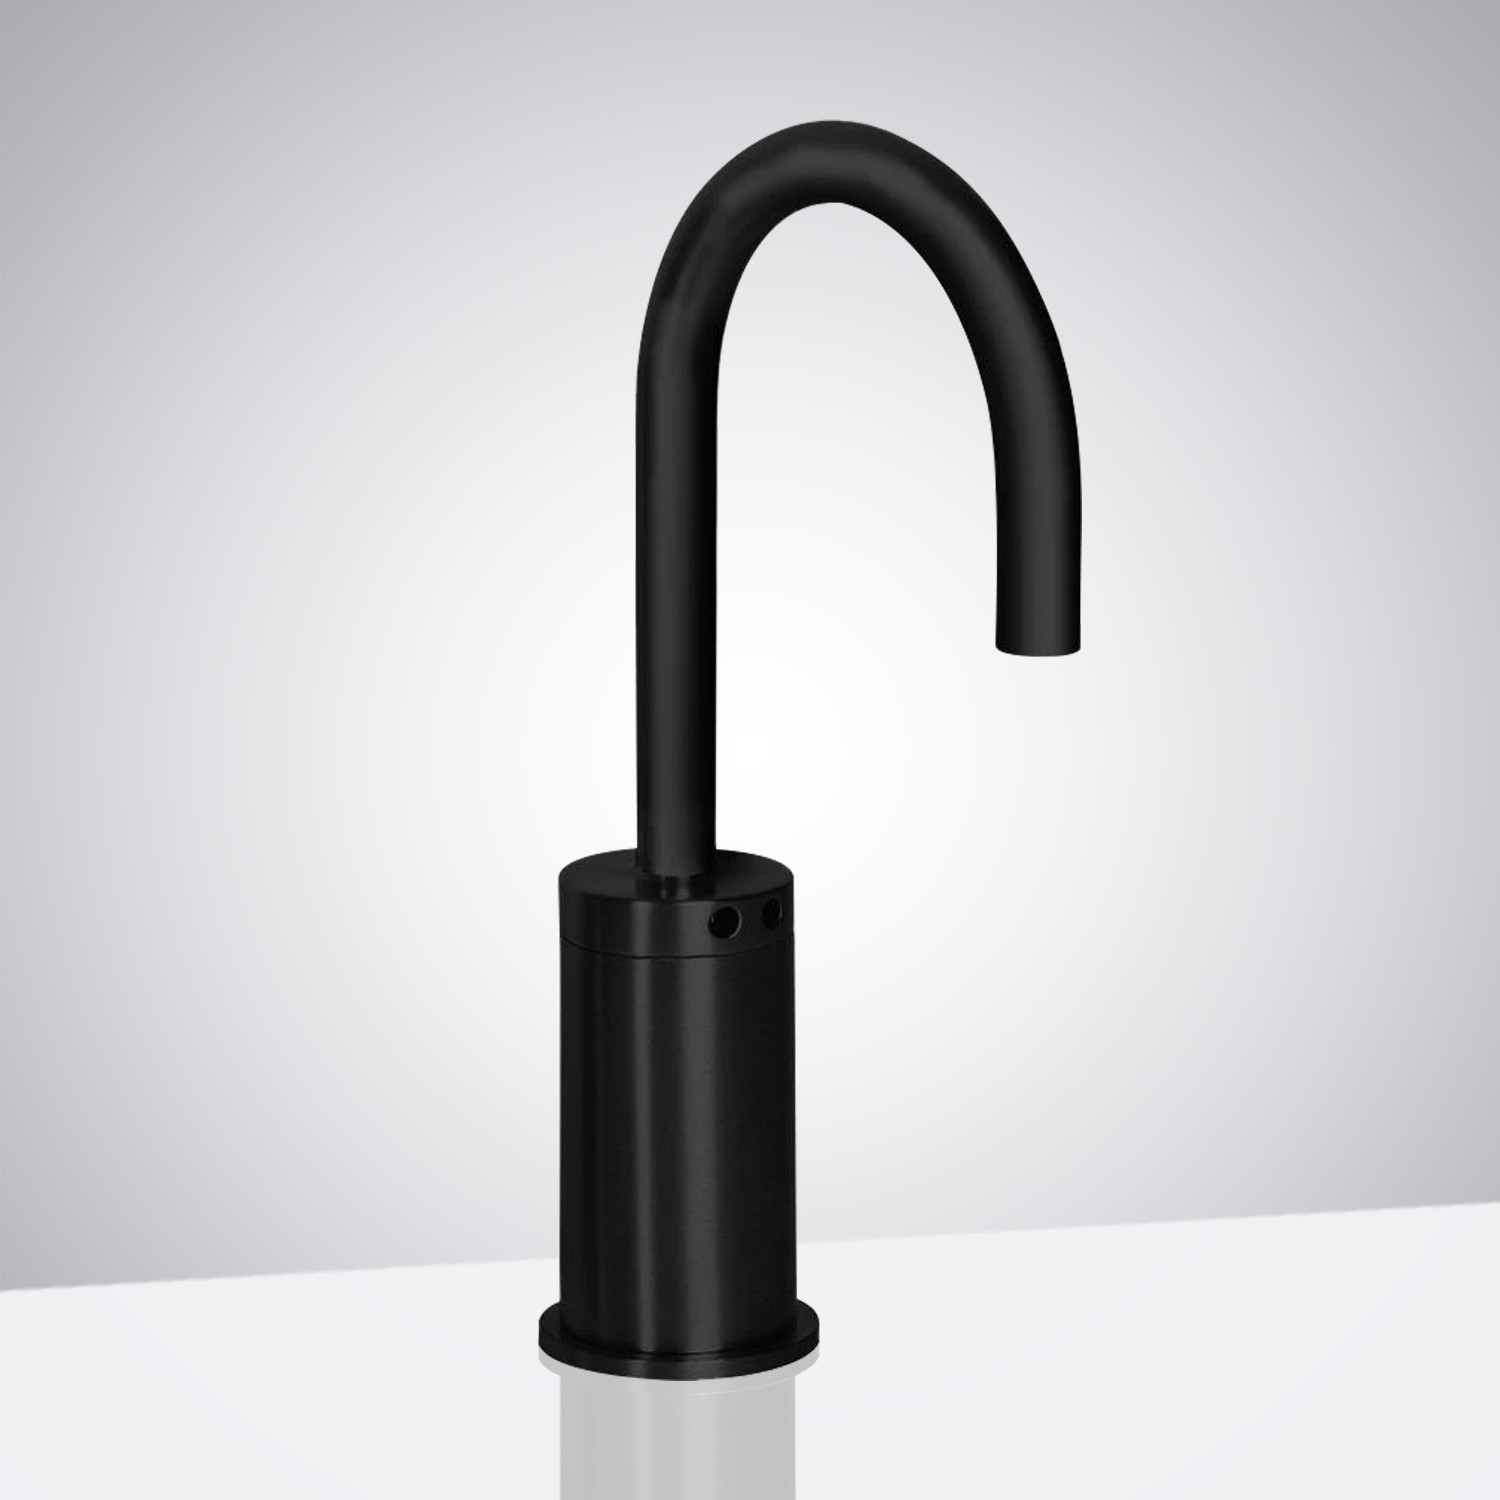 Fontana Commercial Matte Black Touchless Automatic Sensor Hands-Free Faucet